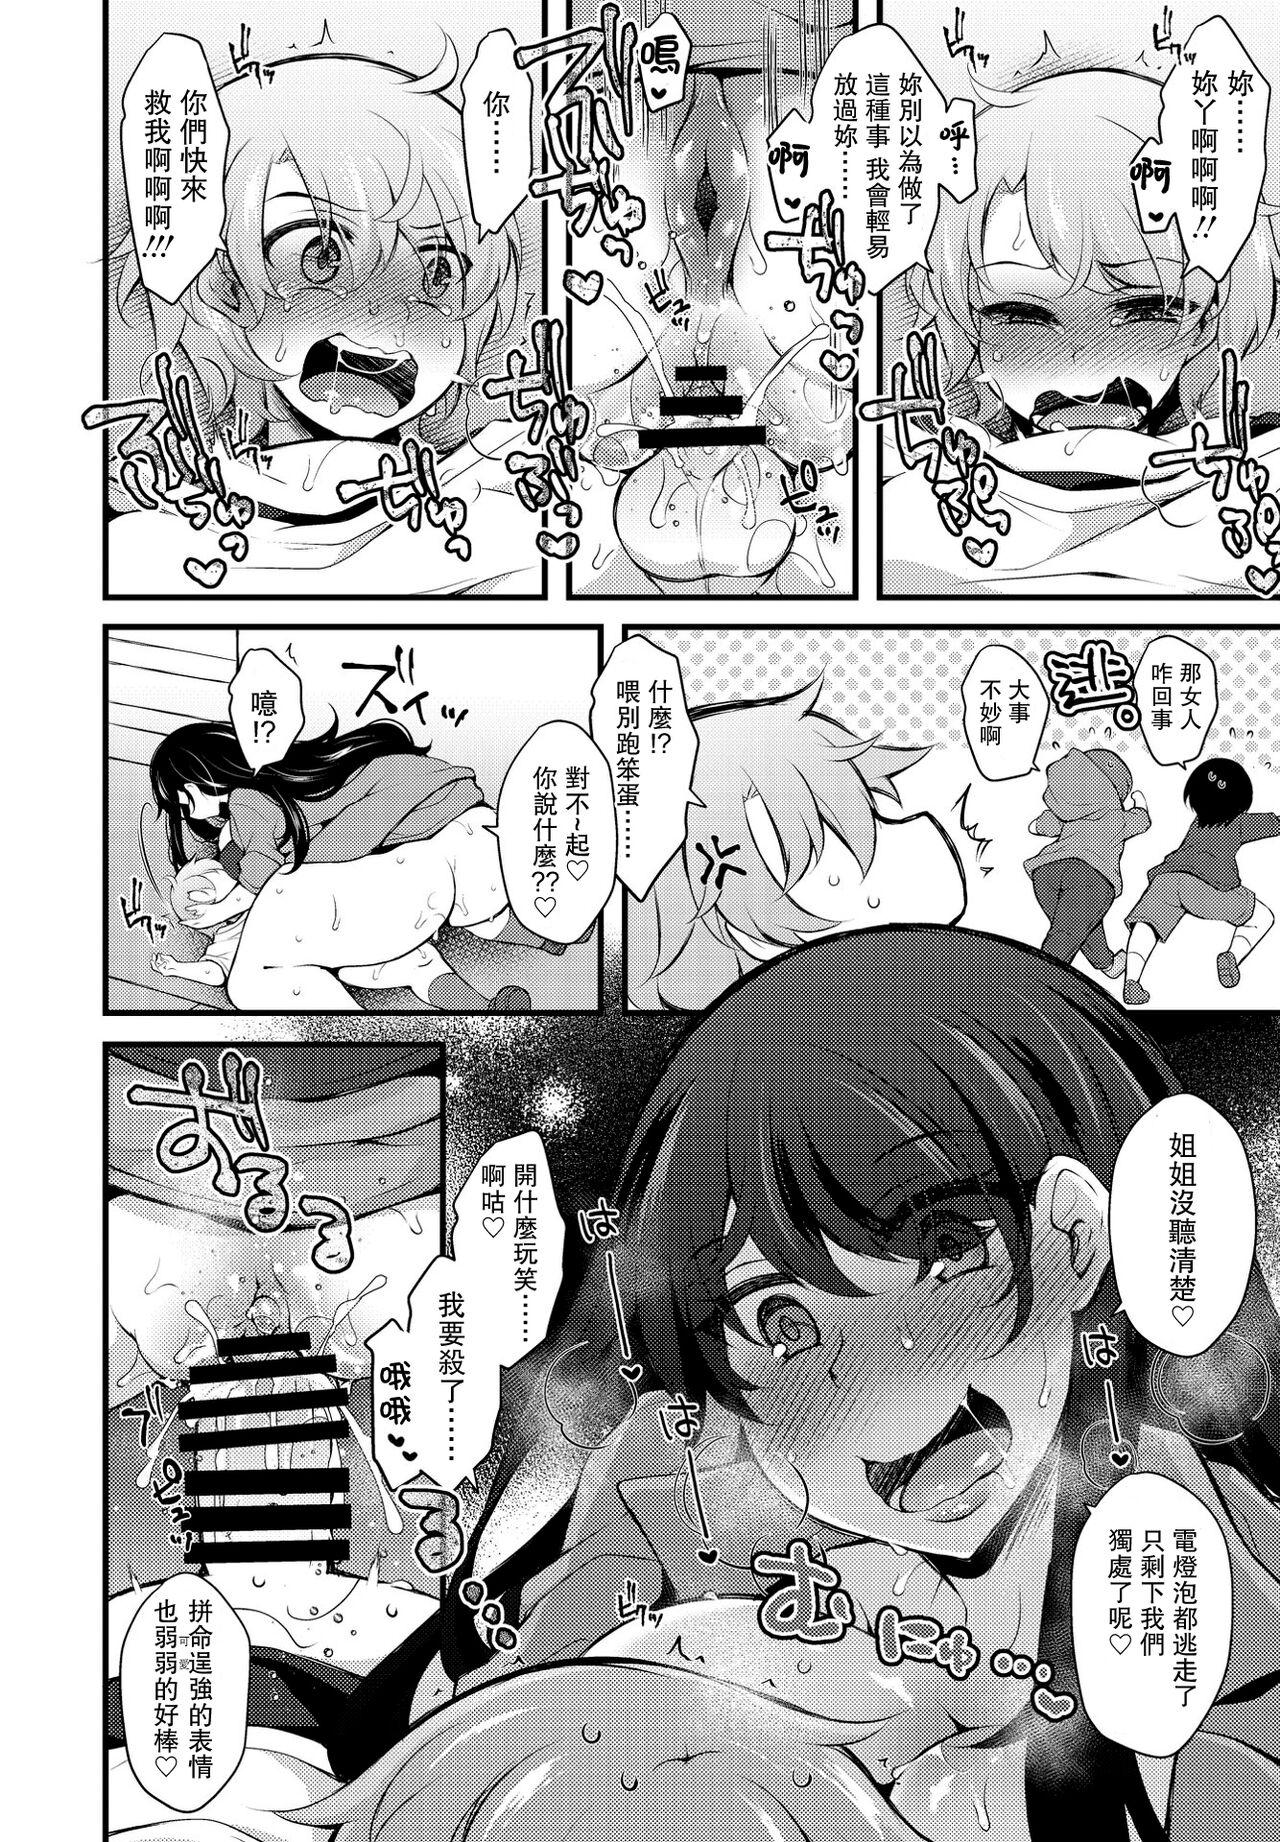 Spanking Kureopatotta Sekai e Youkoso 4 Petite Girl Porn - Page 8